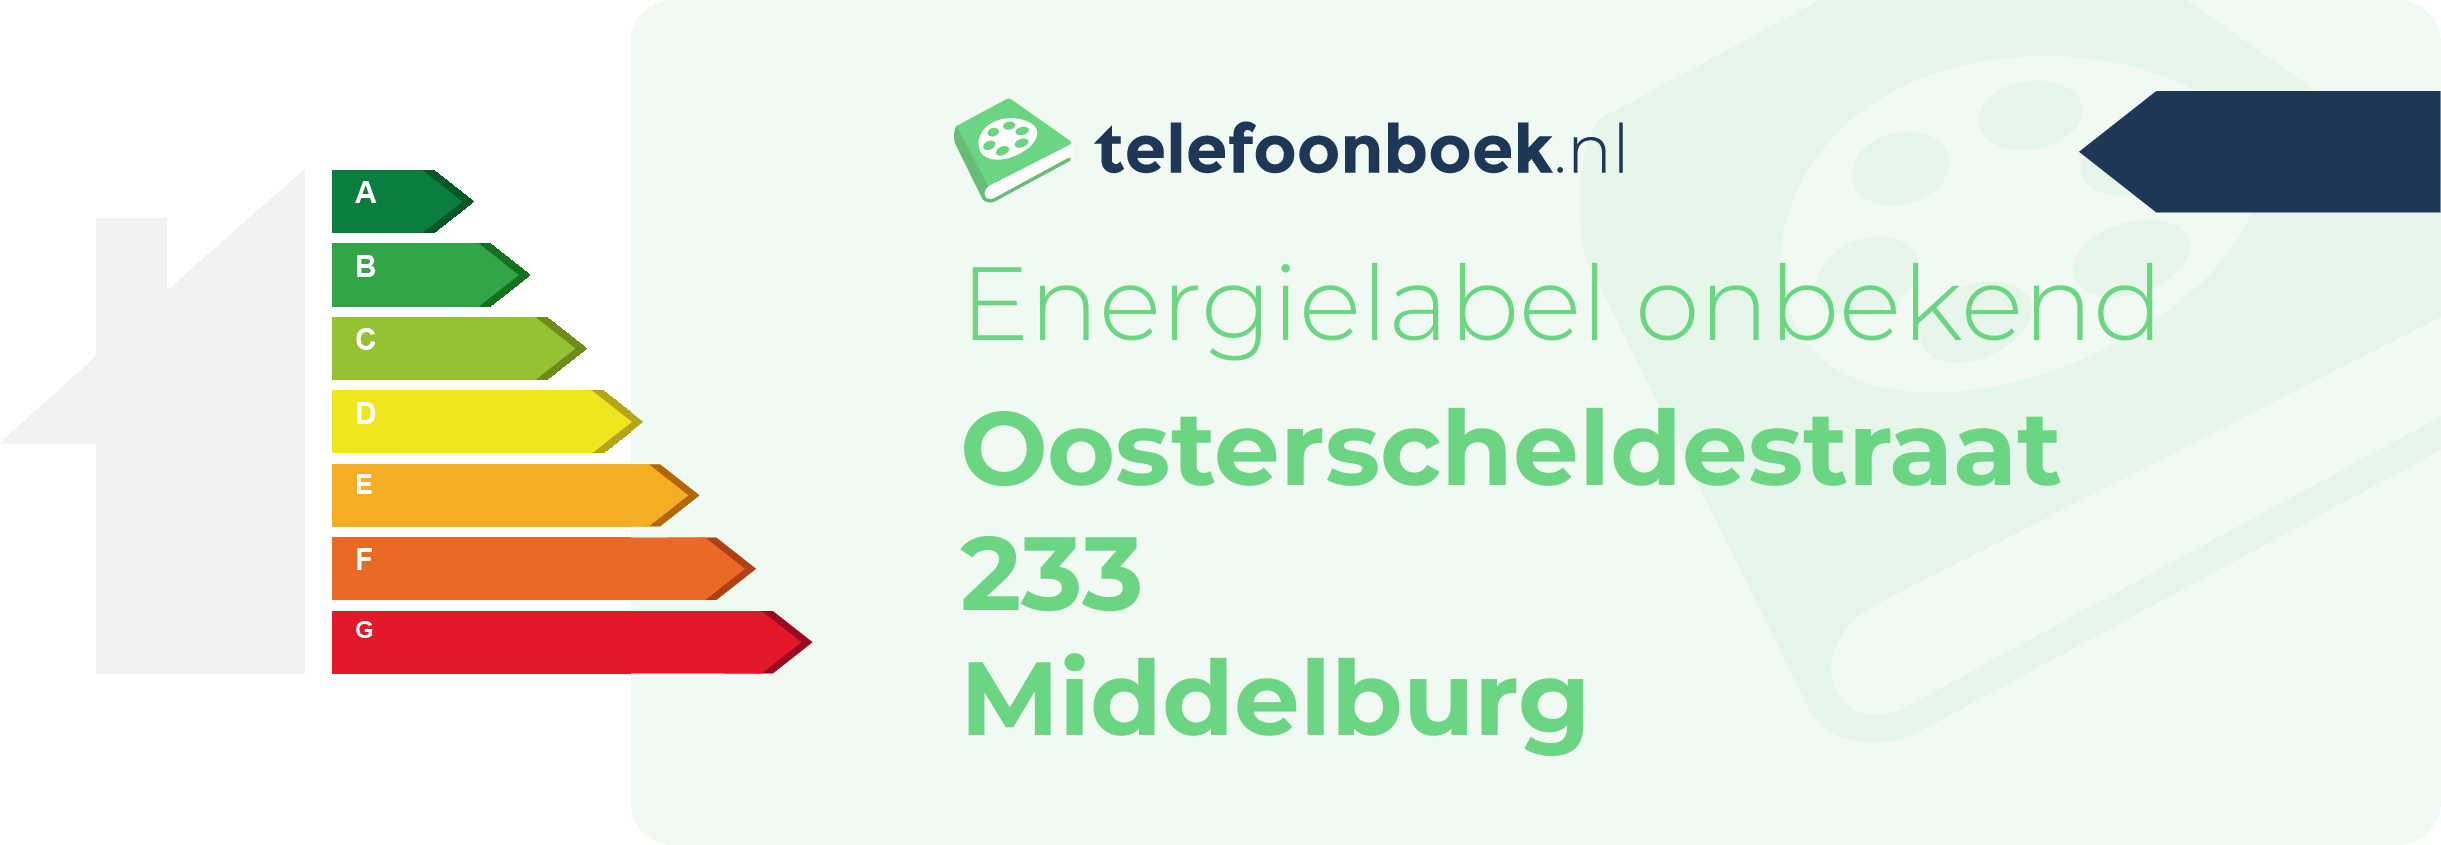 Energielabel Oosterscheldestraat 233 Middelburg